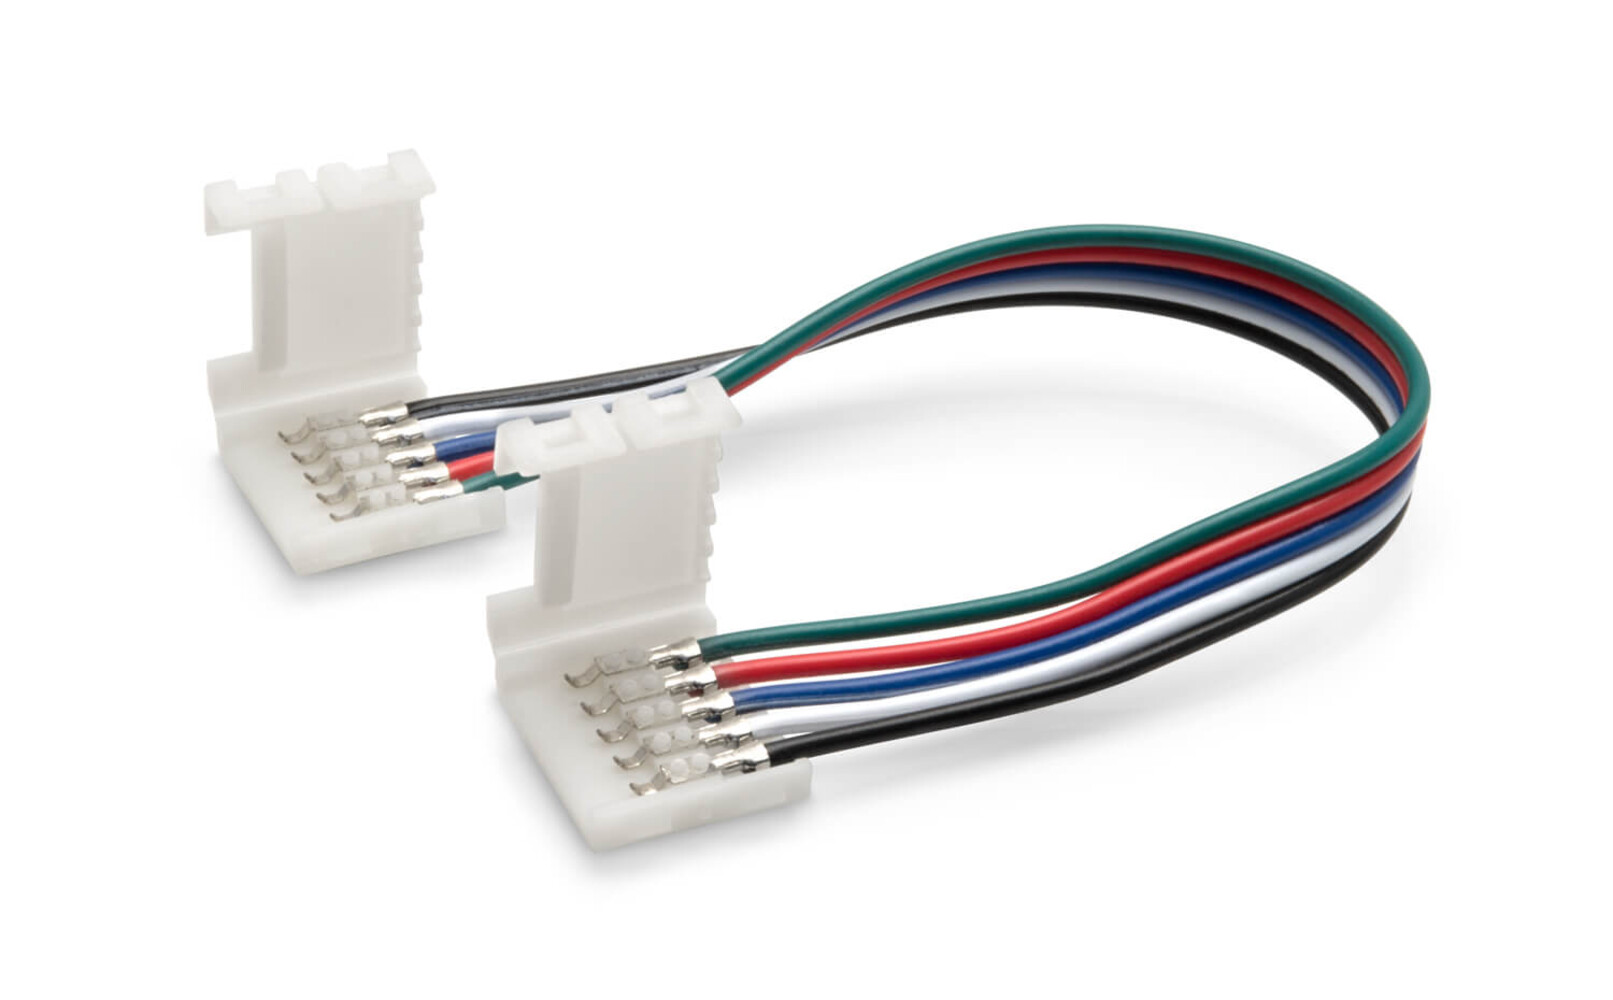 Schnellverbinder Clip 5pol 12mm RGBW LED-Strip